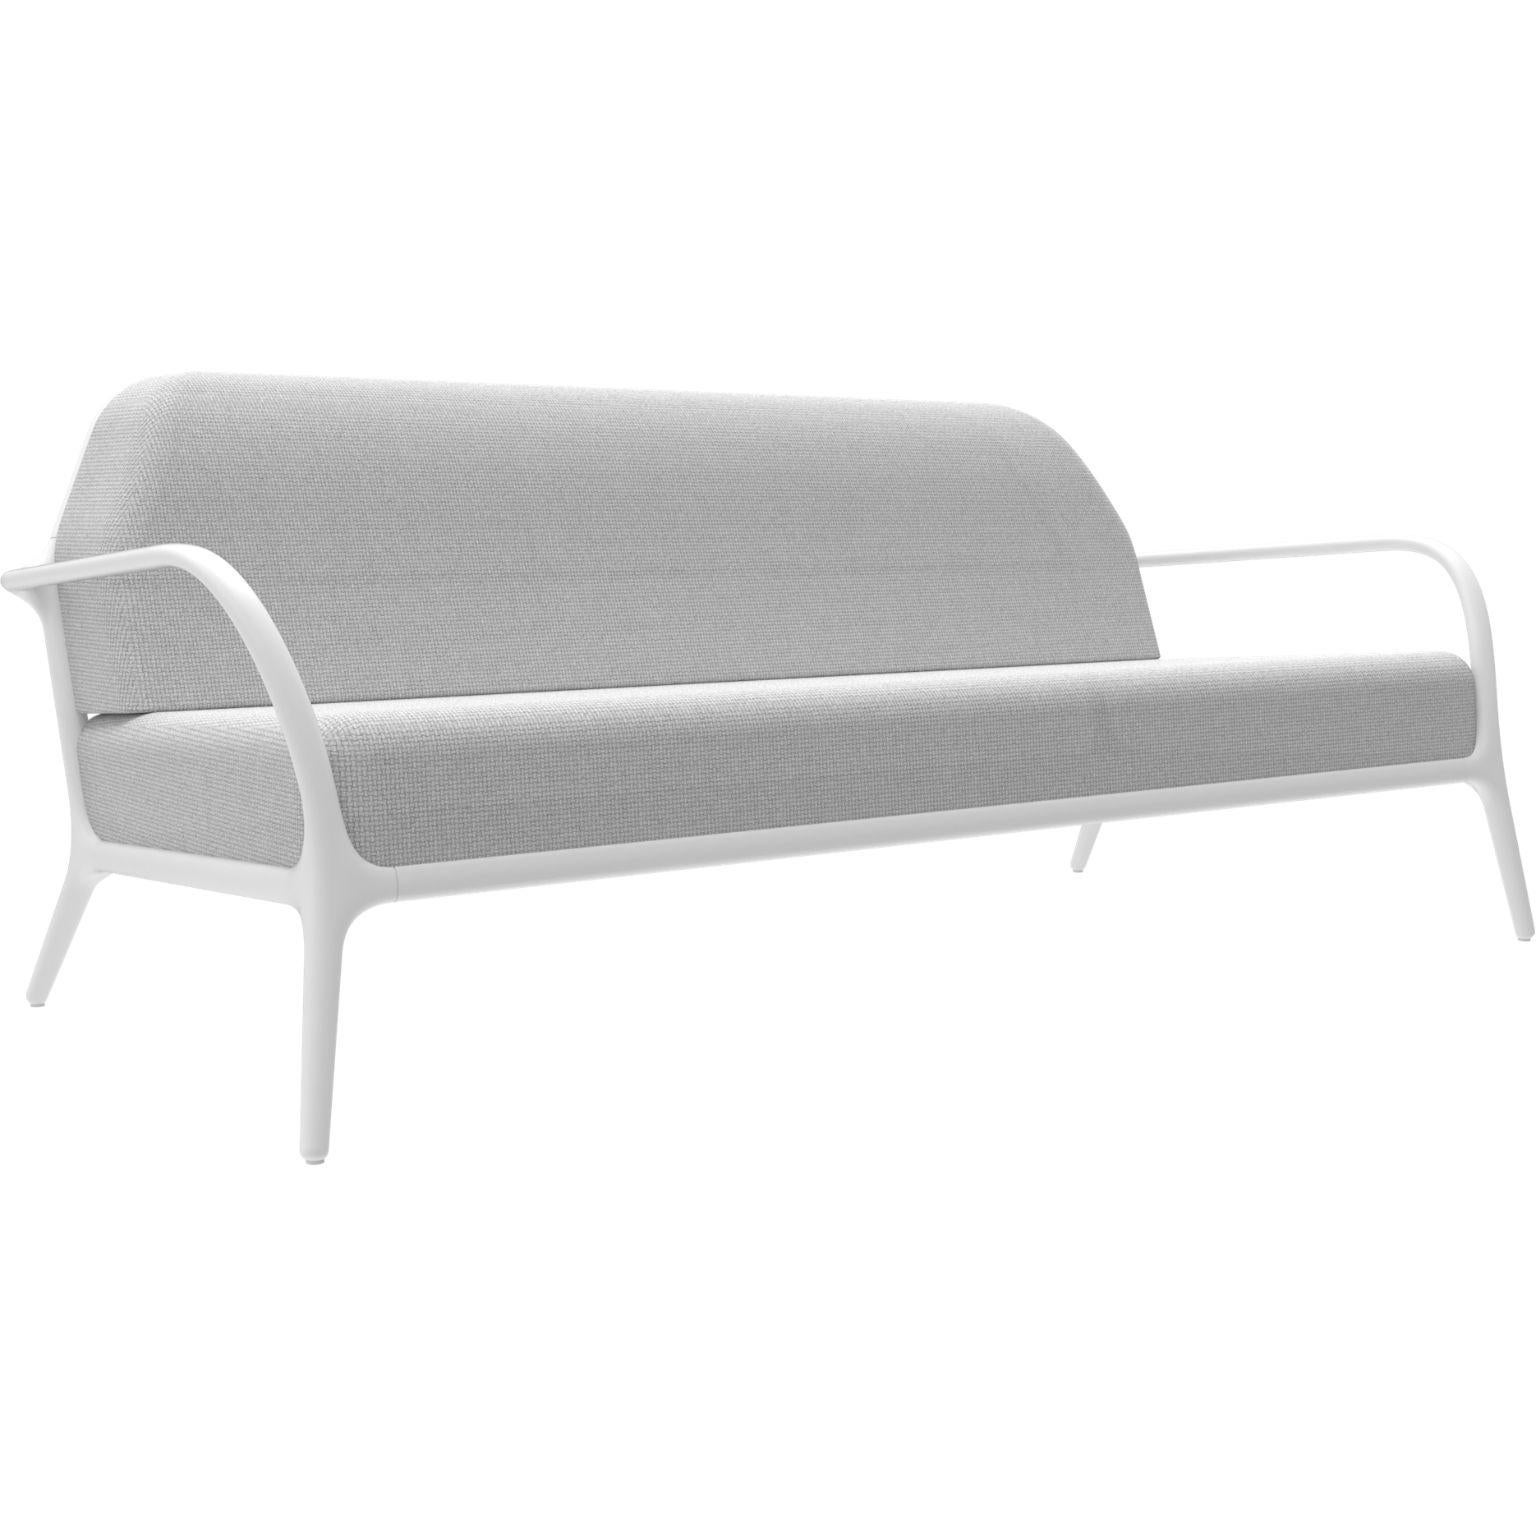 Xaloc weißes sofa von MOWEE
Abmessungen: T100 x B200 x H81 cm (Sitzhöhe 42 cm)
MATERIAL: Aluminium, Textil
Gewicht: 46 kg
Auch in verschiedenen Farben und Ausführungen erhältlich. 

 Xaloc synthetisiert die Linien der Inneneinrichtung und